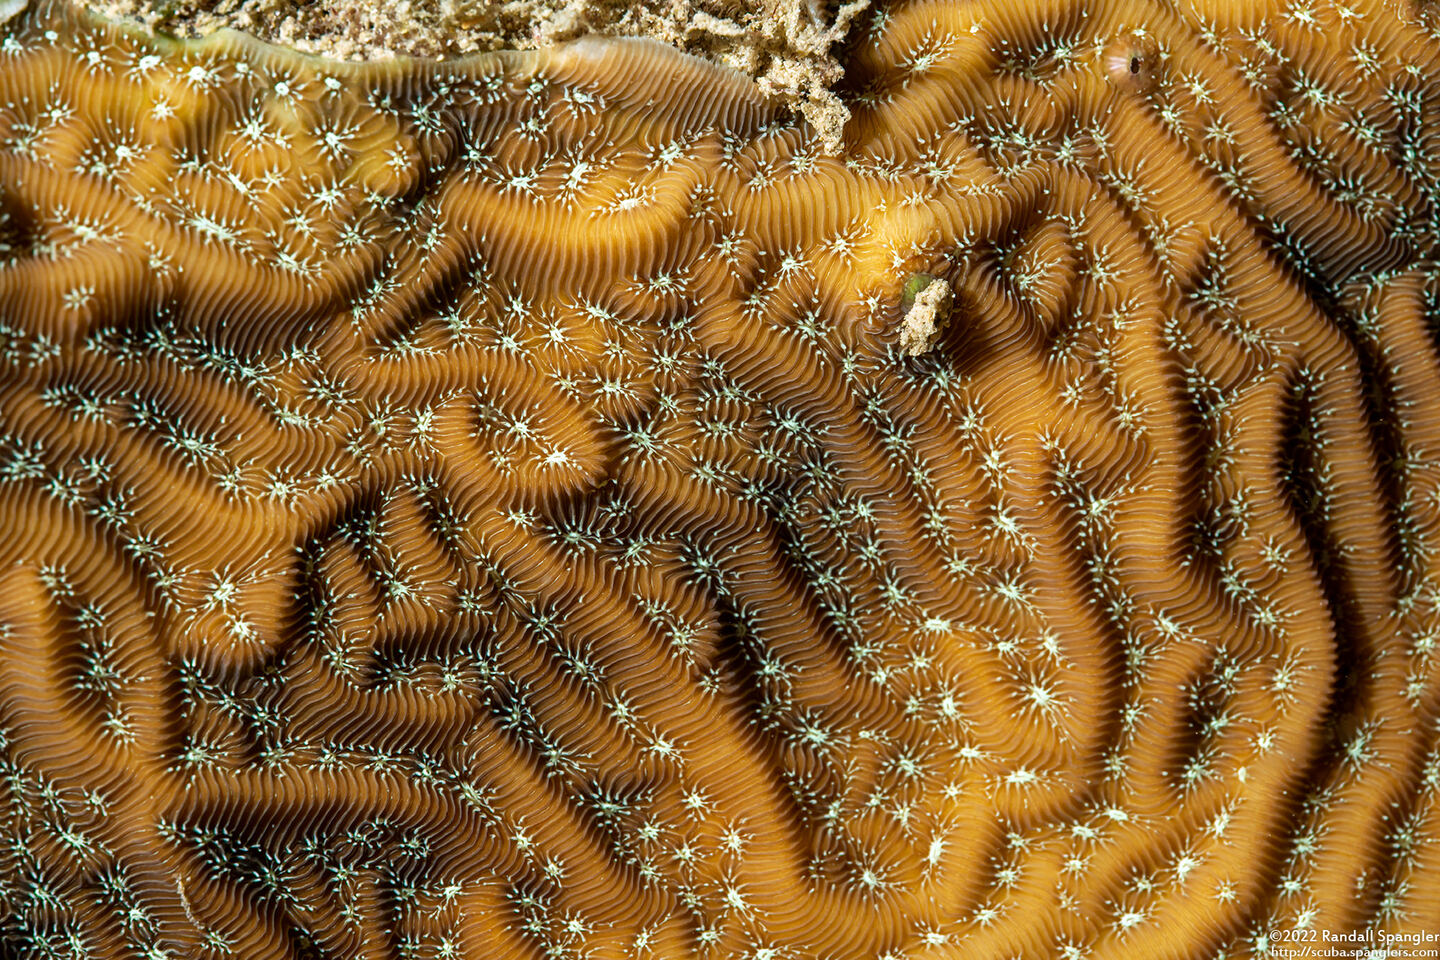 Agaricia lamarcki (Whitestar Sheet Coral)